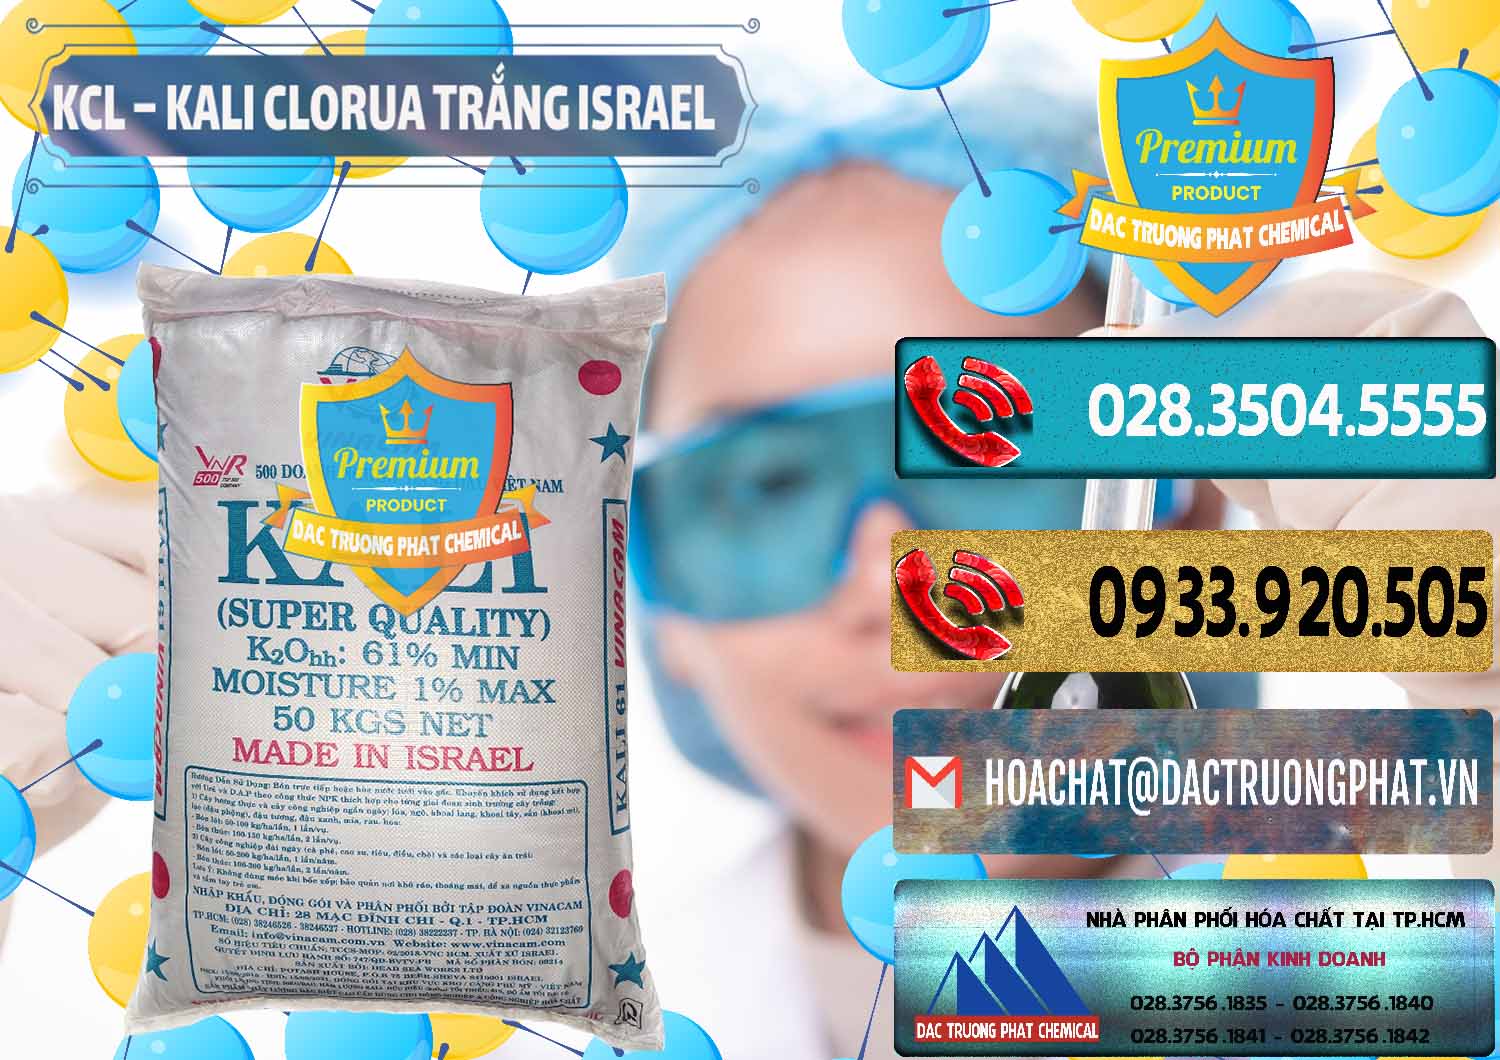 Đơn vị chuyên bán & cung ứng KCL – Kali Clorua Trắng Israel - 0087 - Cty chuyên bán và cung cấp hóa chất tại TP.HCM - hoachatdetnhuom.com